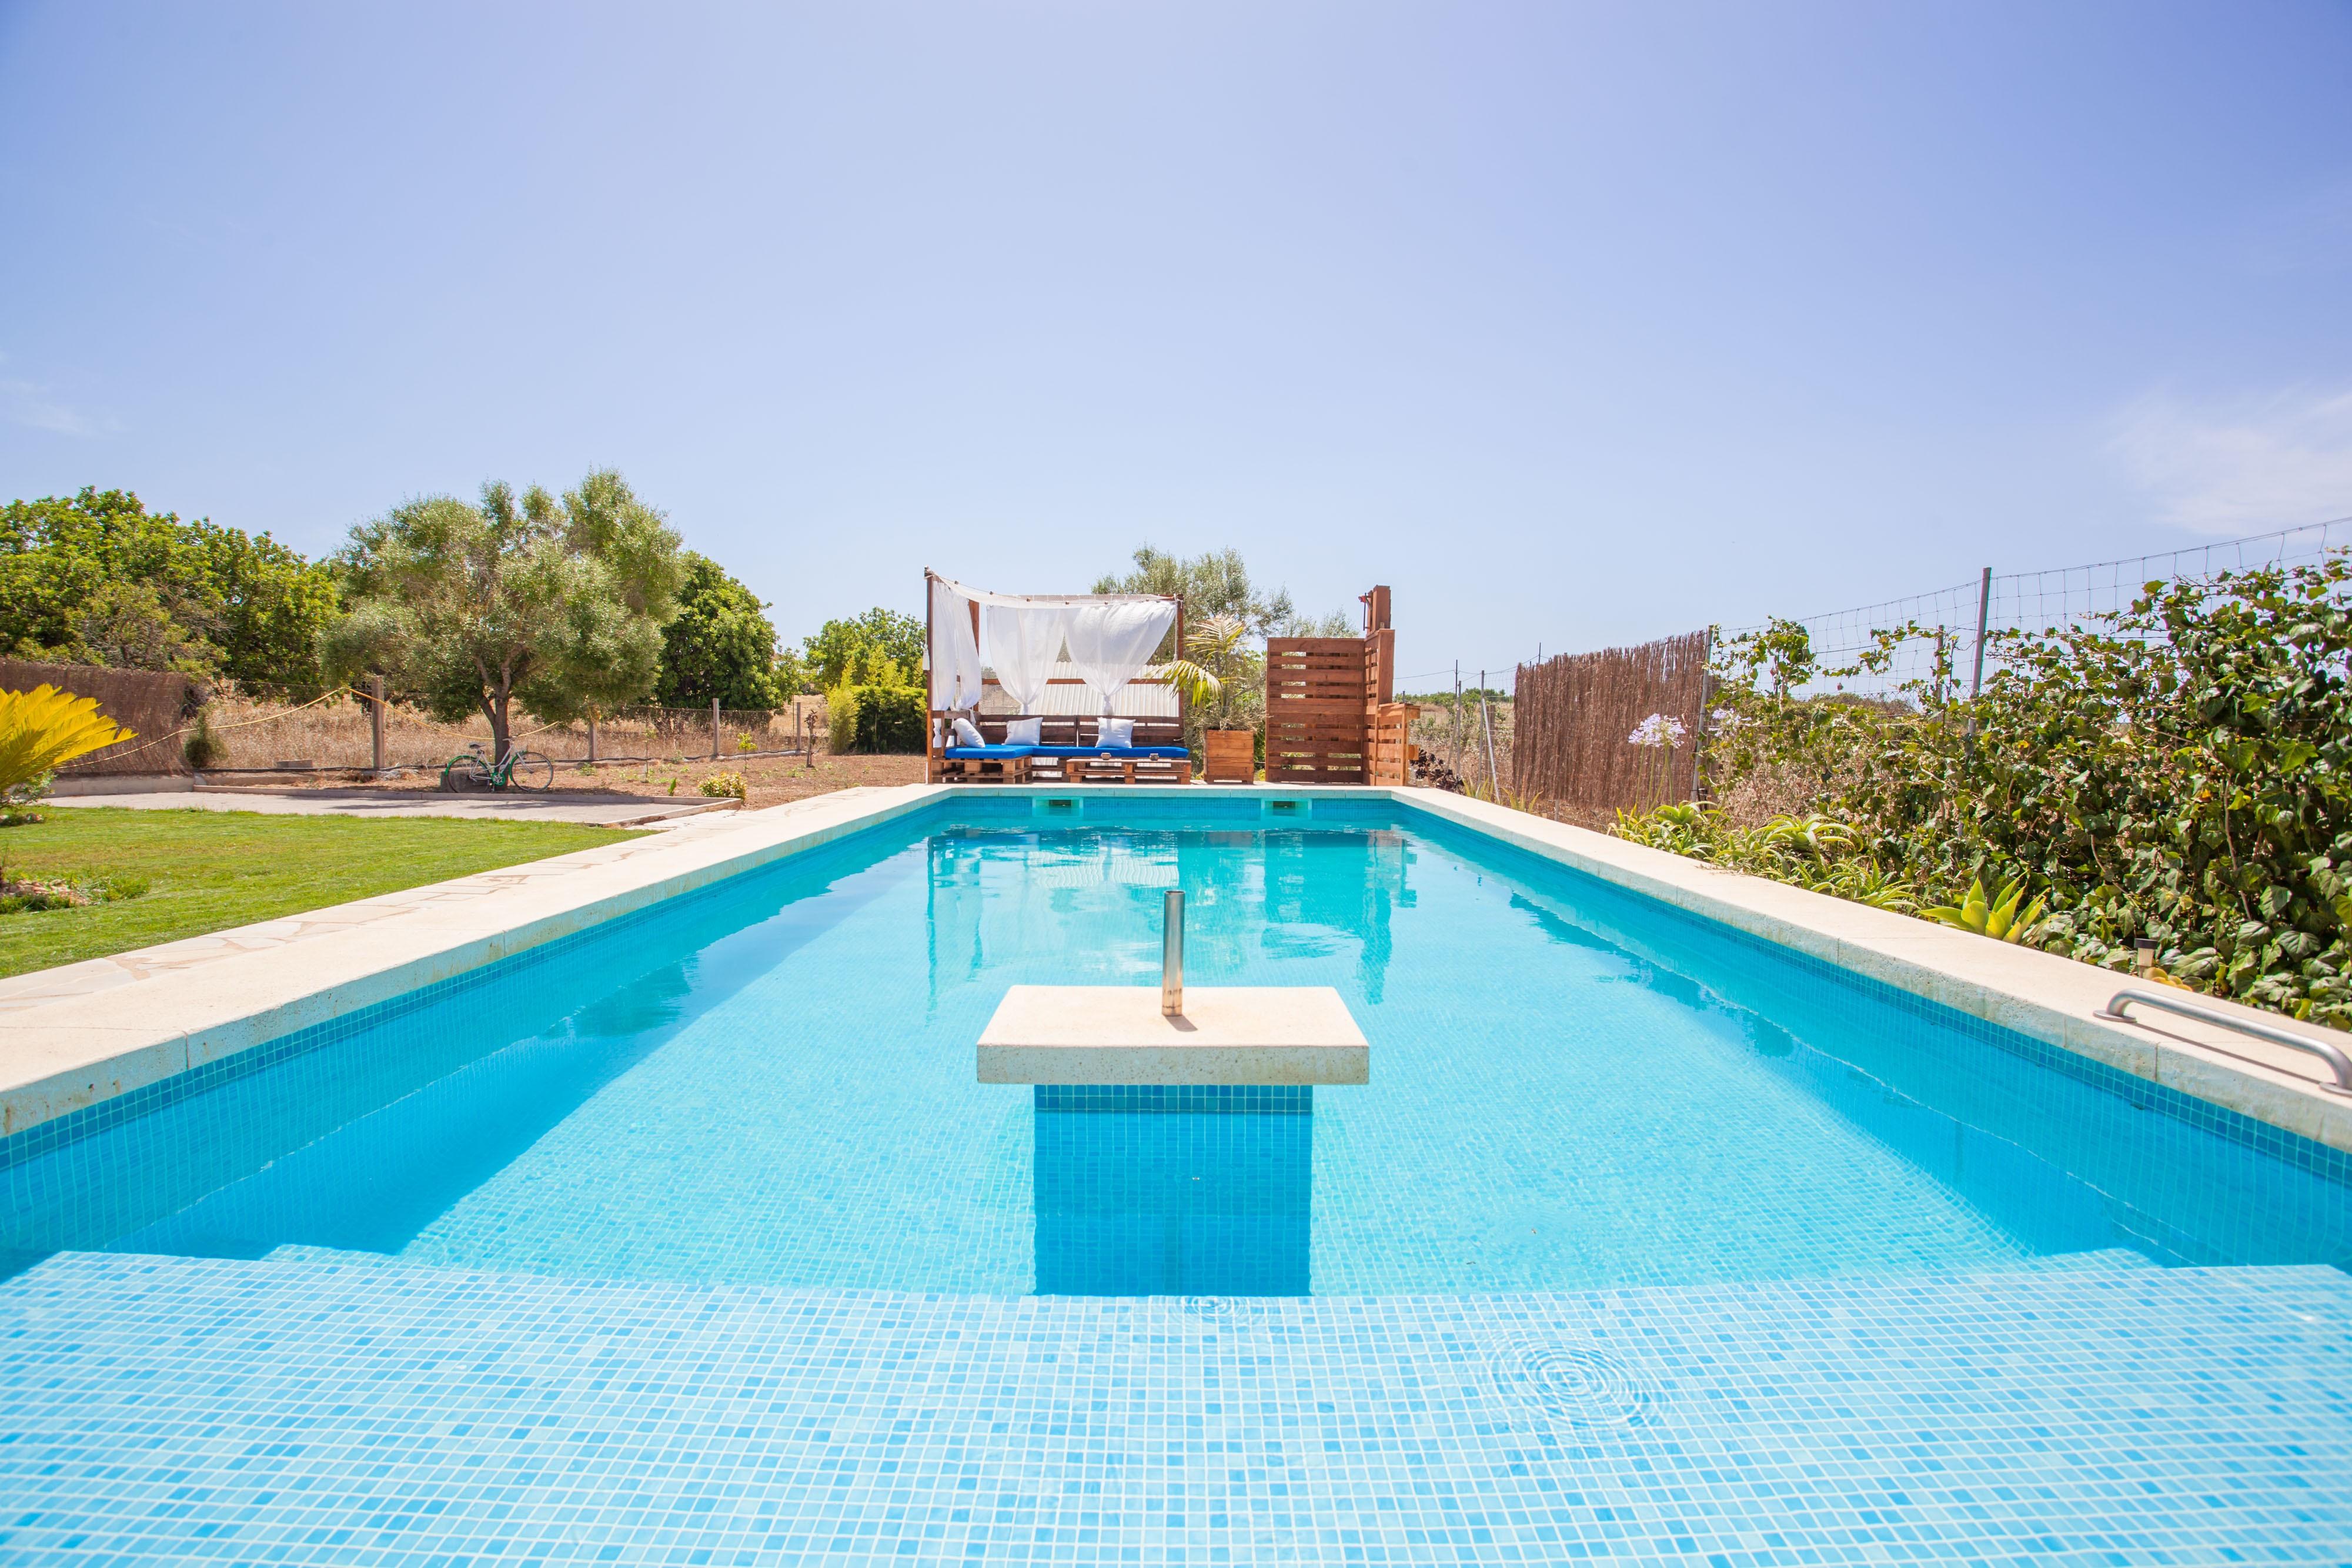 Property Image 2 - SON SEGI - Villa with private pool in Sant Llorenç des Cardassar. Free WiFi